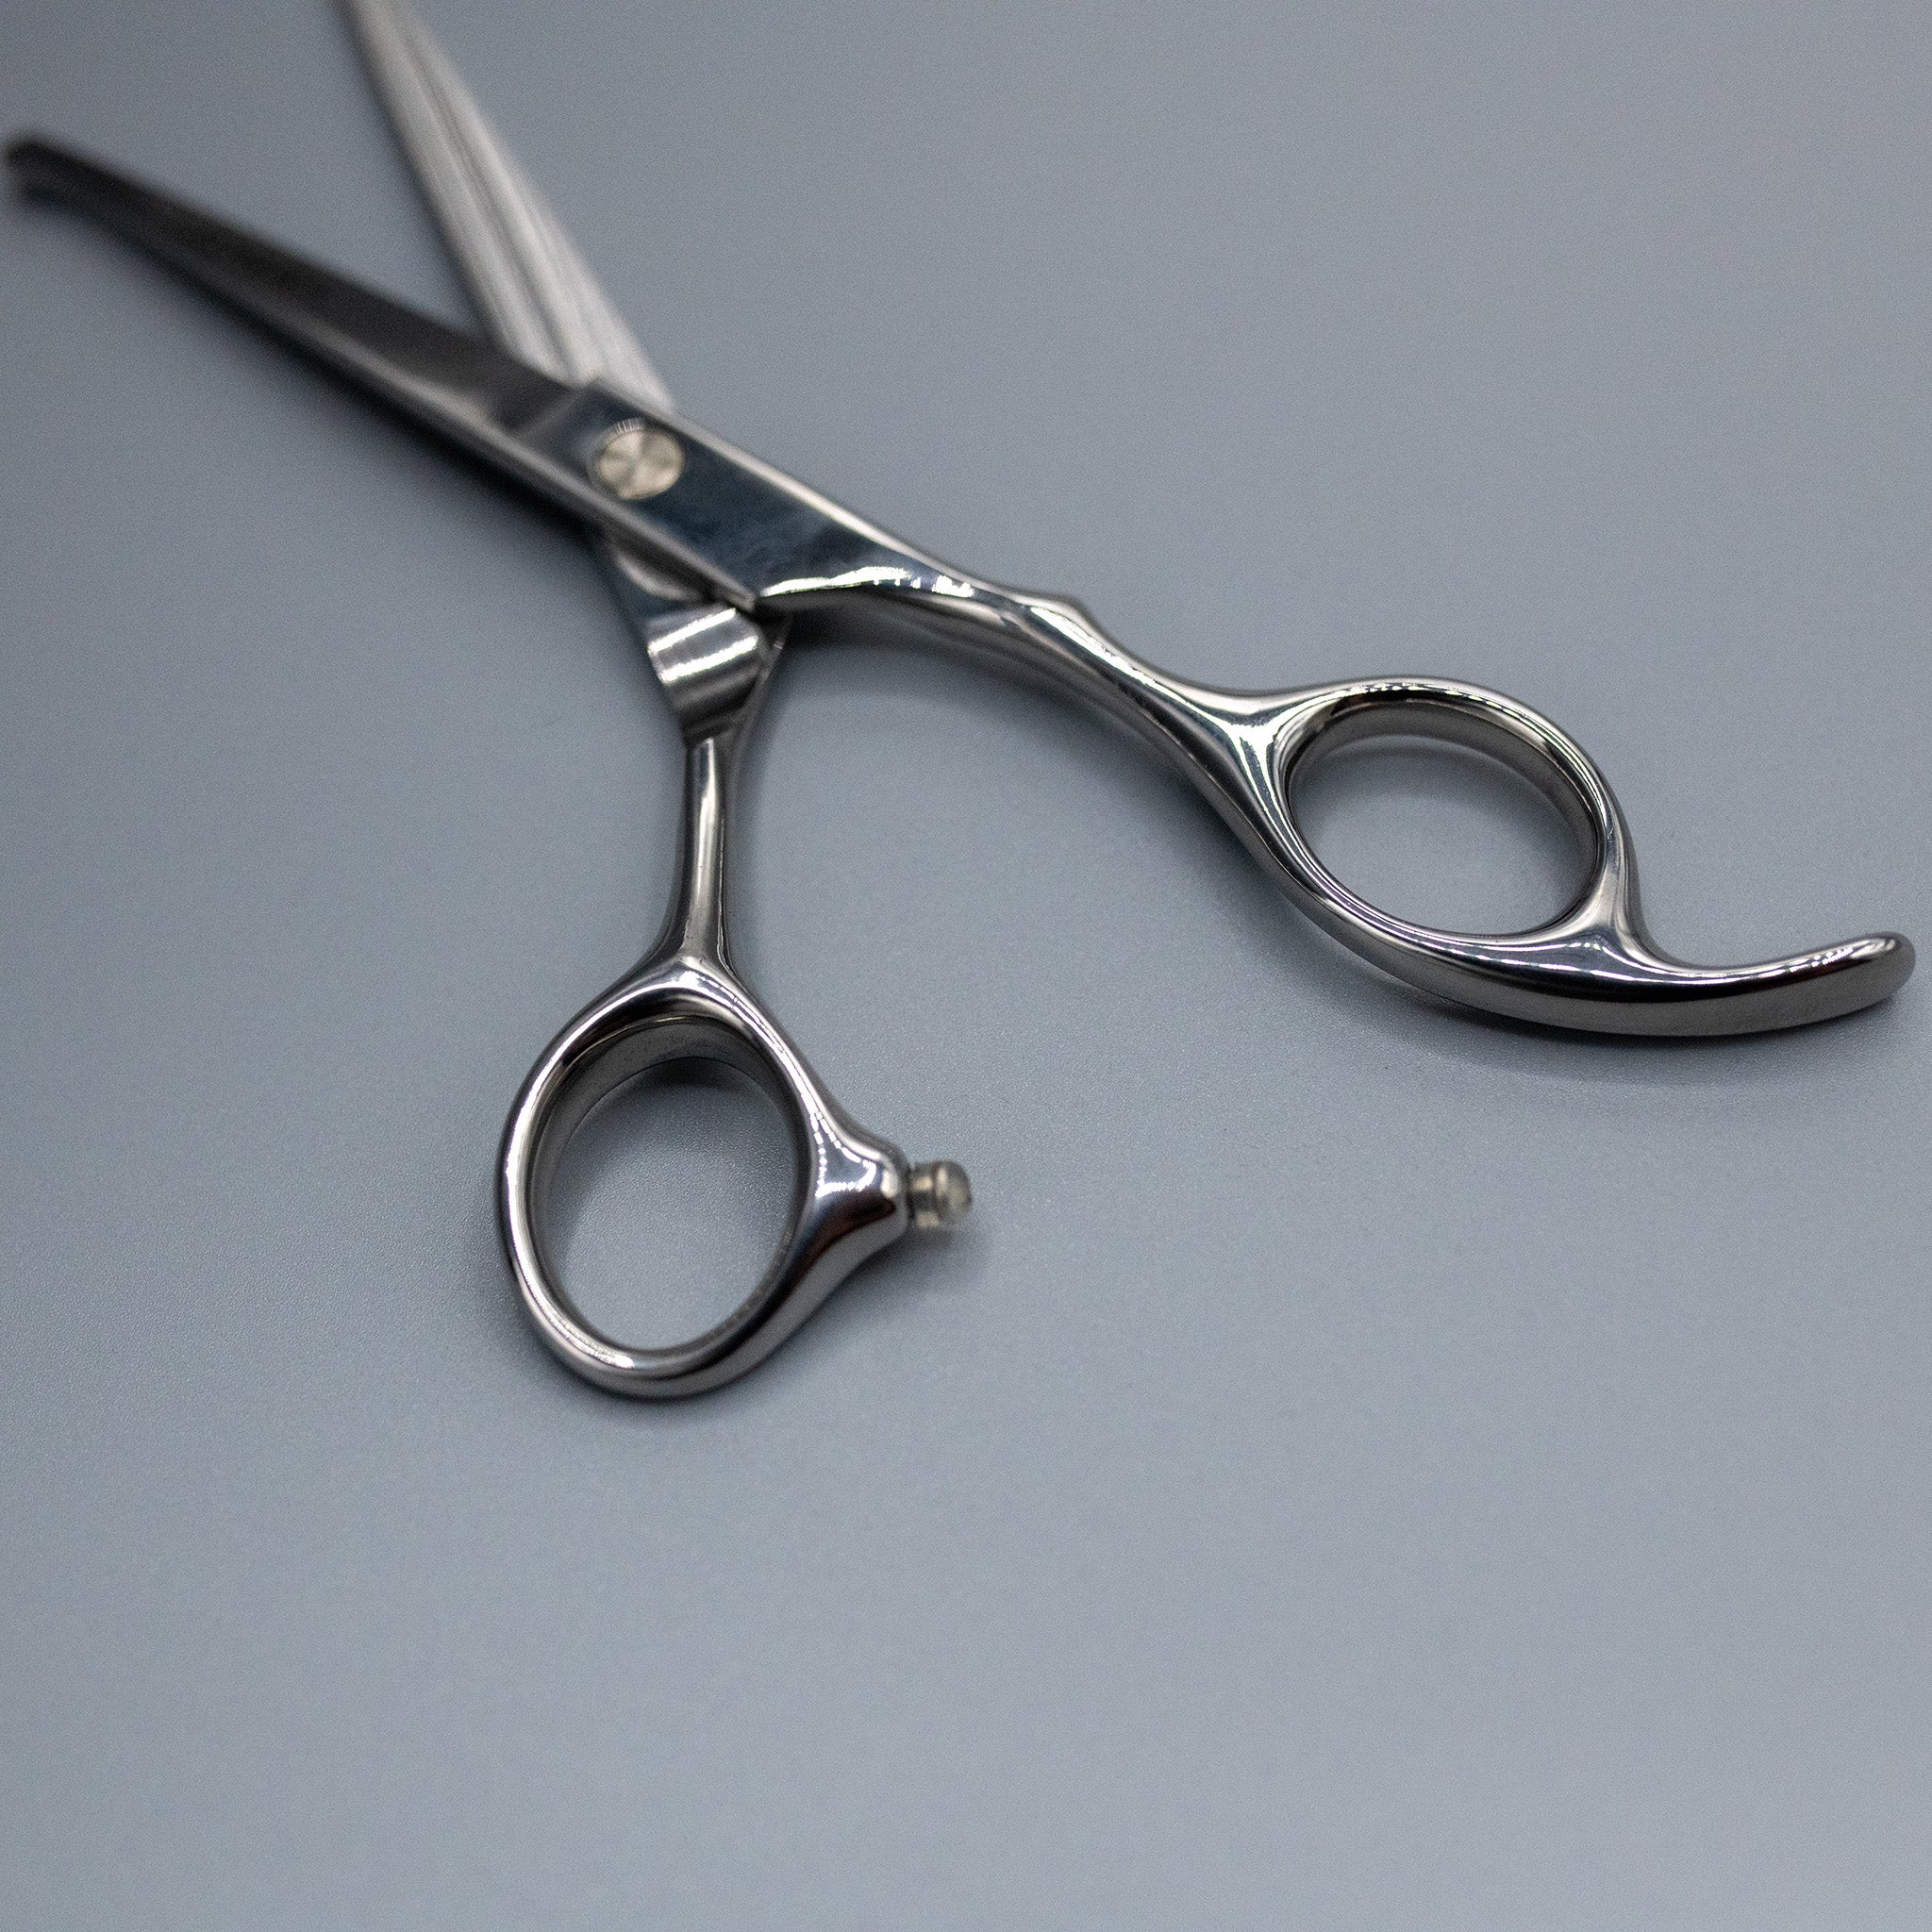 rounded scissors